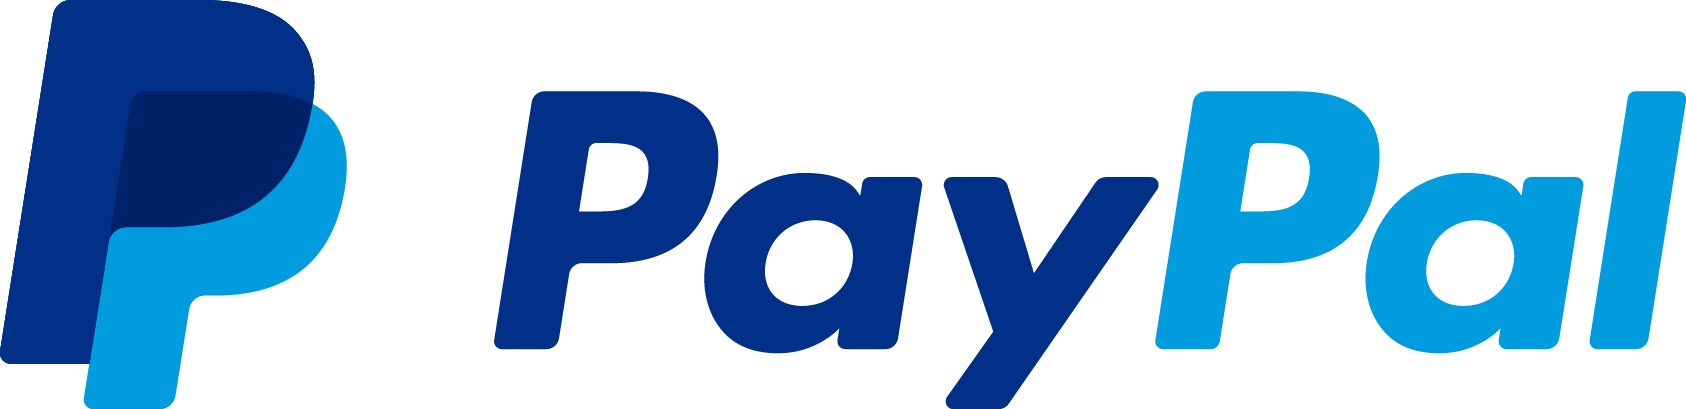 paypal_logo_horizontal